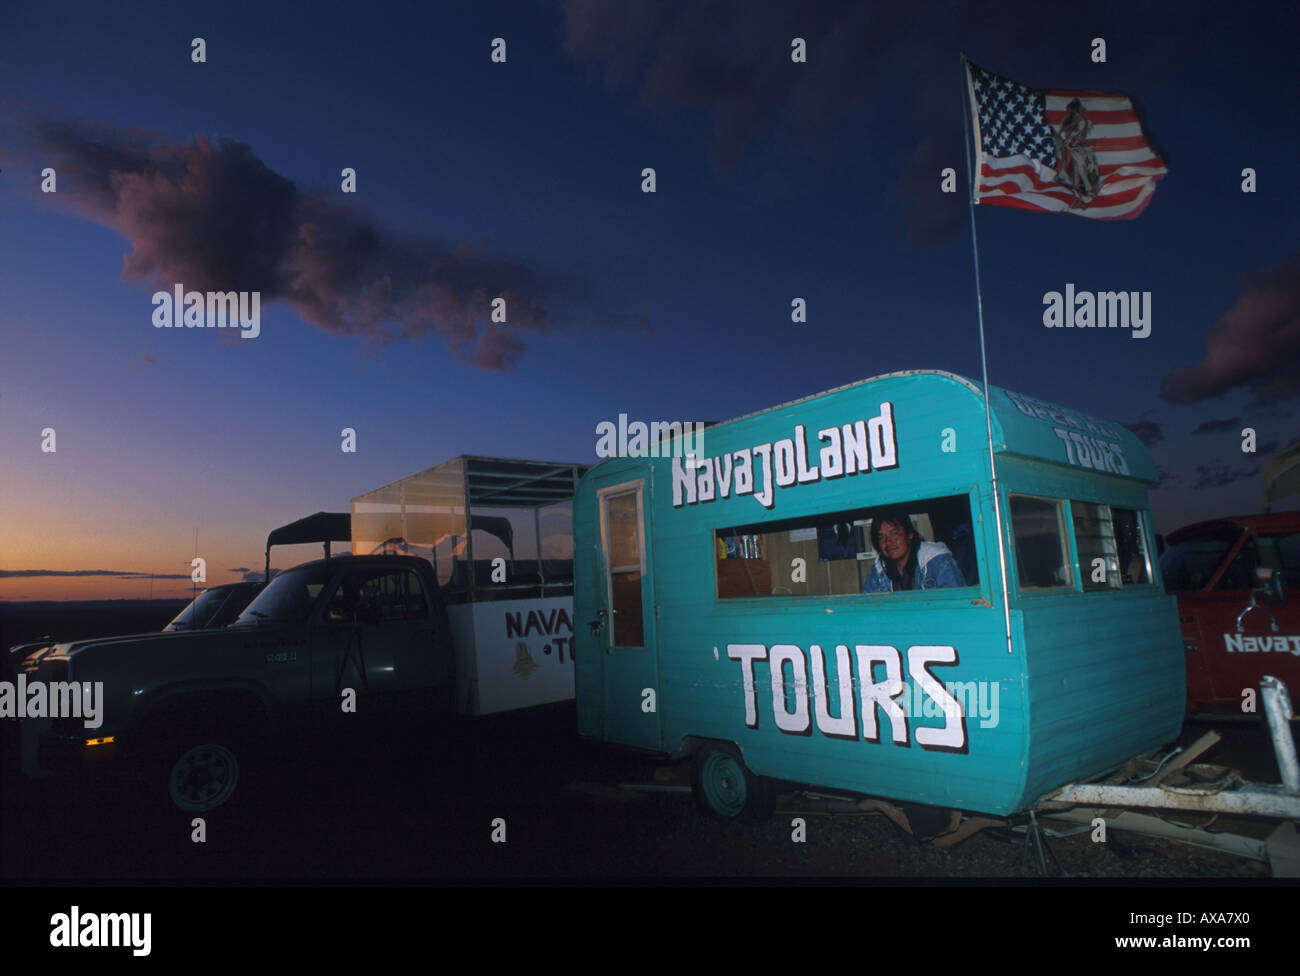 Caravan nella luce della sera la promozione di tours, guida turistica, Monument Valley, Arizona, Stati Uniti d'America Foto Stock